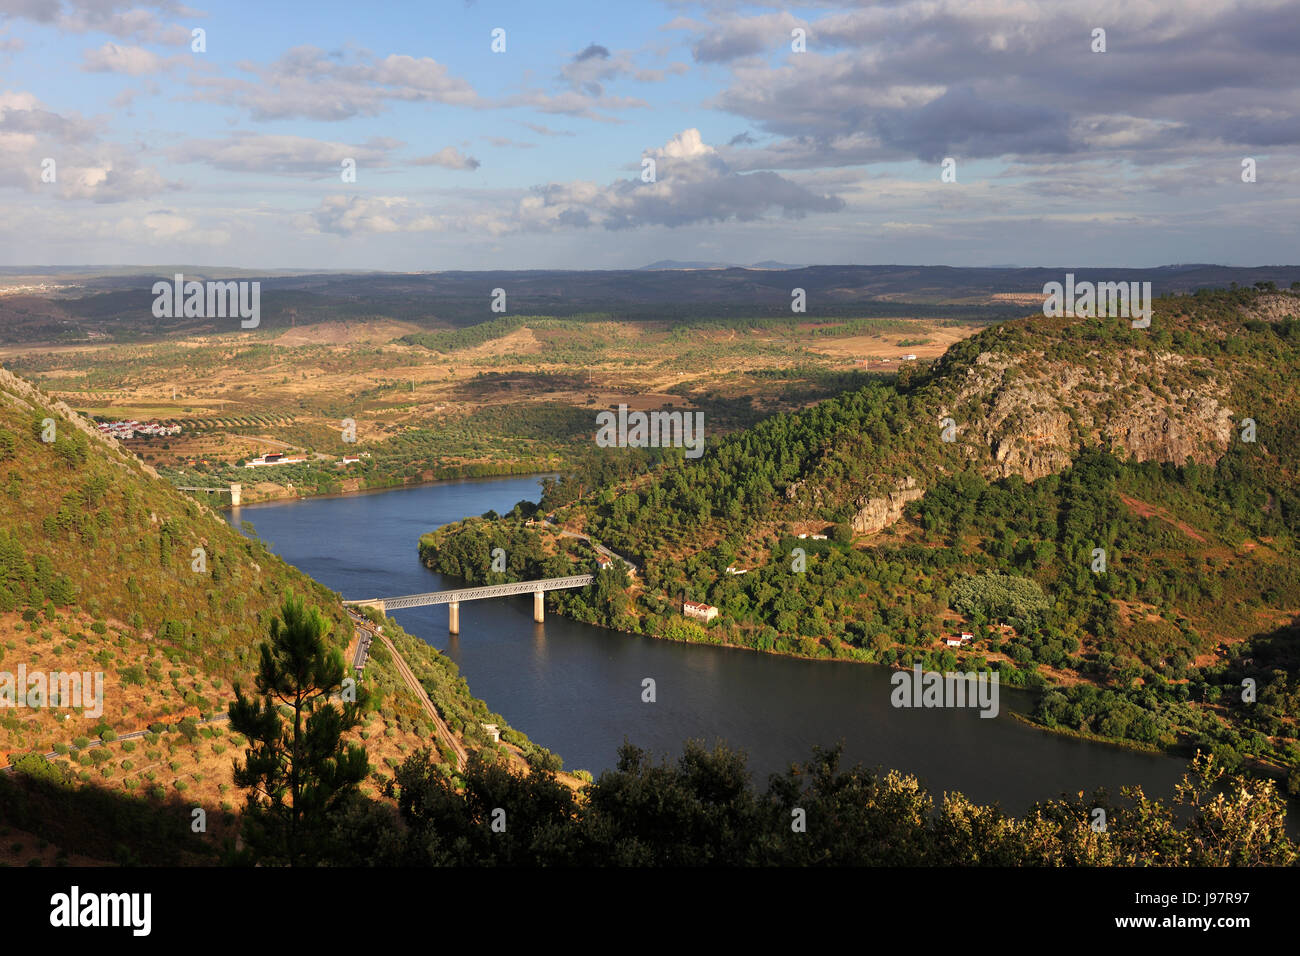 The Tagus river at Vila Velha de Ródão, where begins the International Tagus Natural Park, Beira Baixa. Portugal Stock Photo